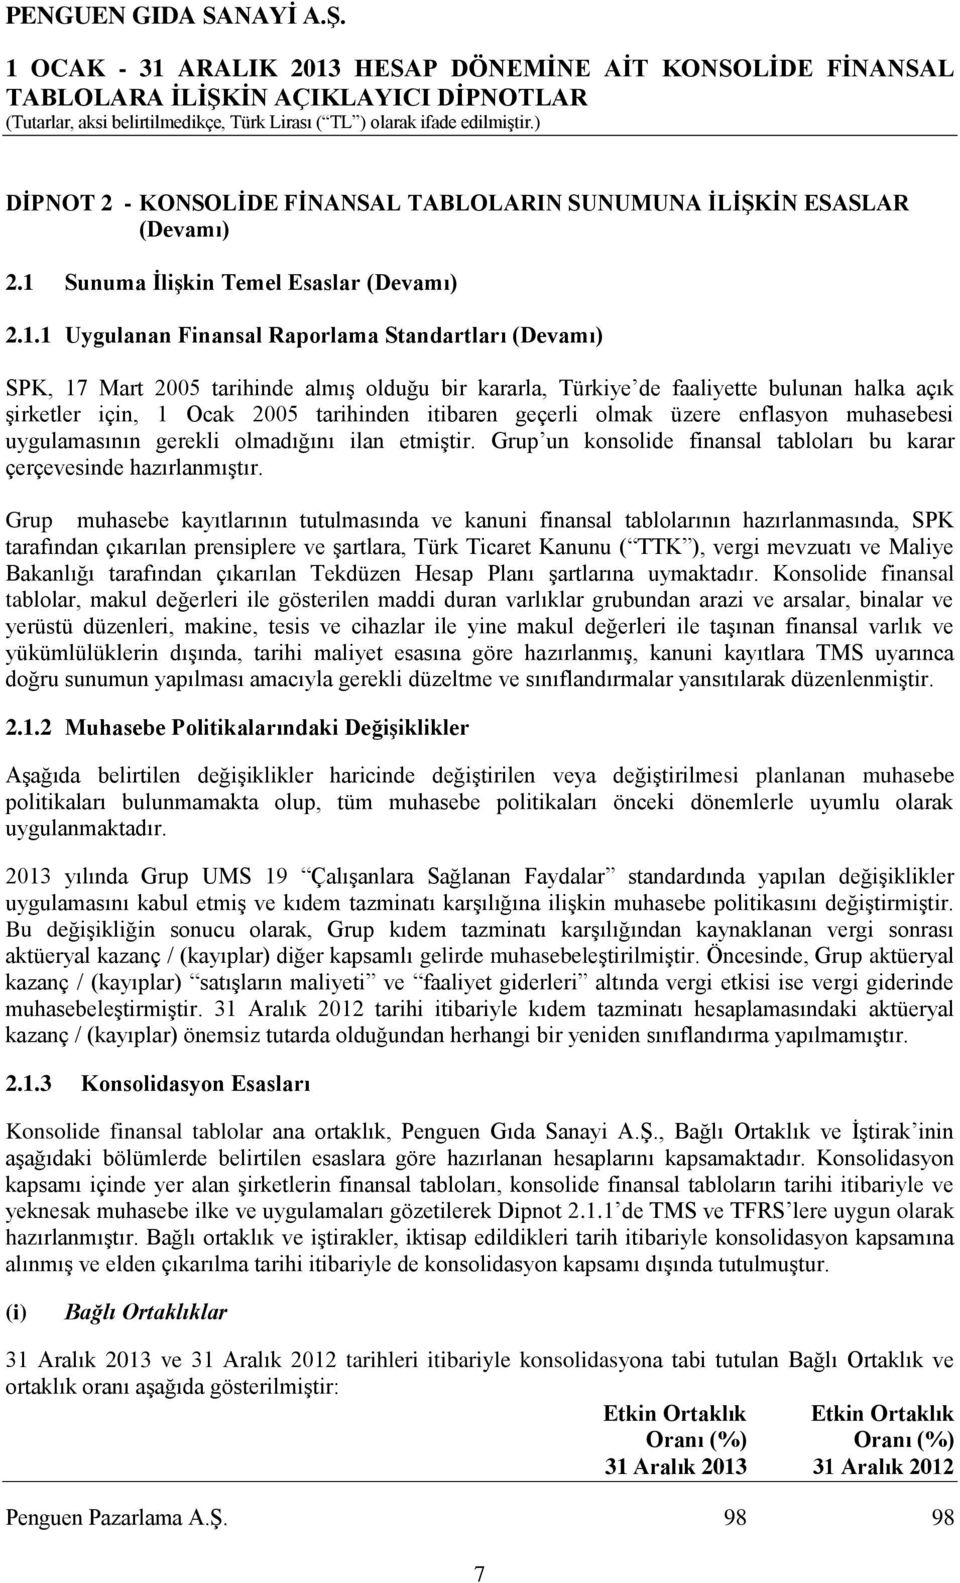 1 Uygulanan Finansal Raporlama Standartları (Devamı) SPK, 17 Mart 2005 tarihinde almış olduğu bir kararla, Türkiye de faaliyette bulunan halka açık şirketler için, 1 Ocak 2005 tarihinden itibaren